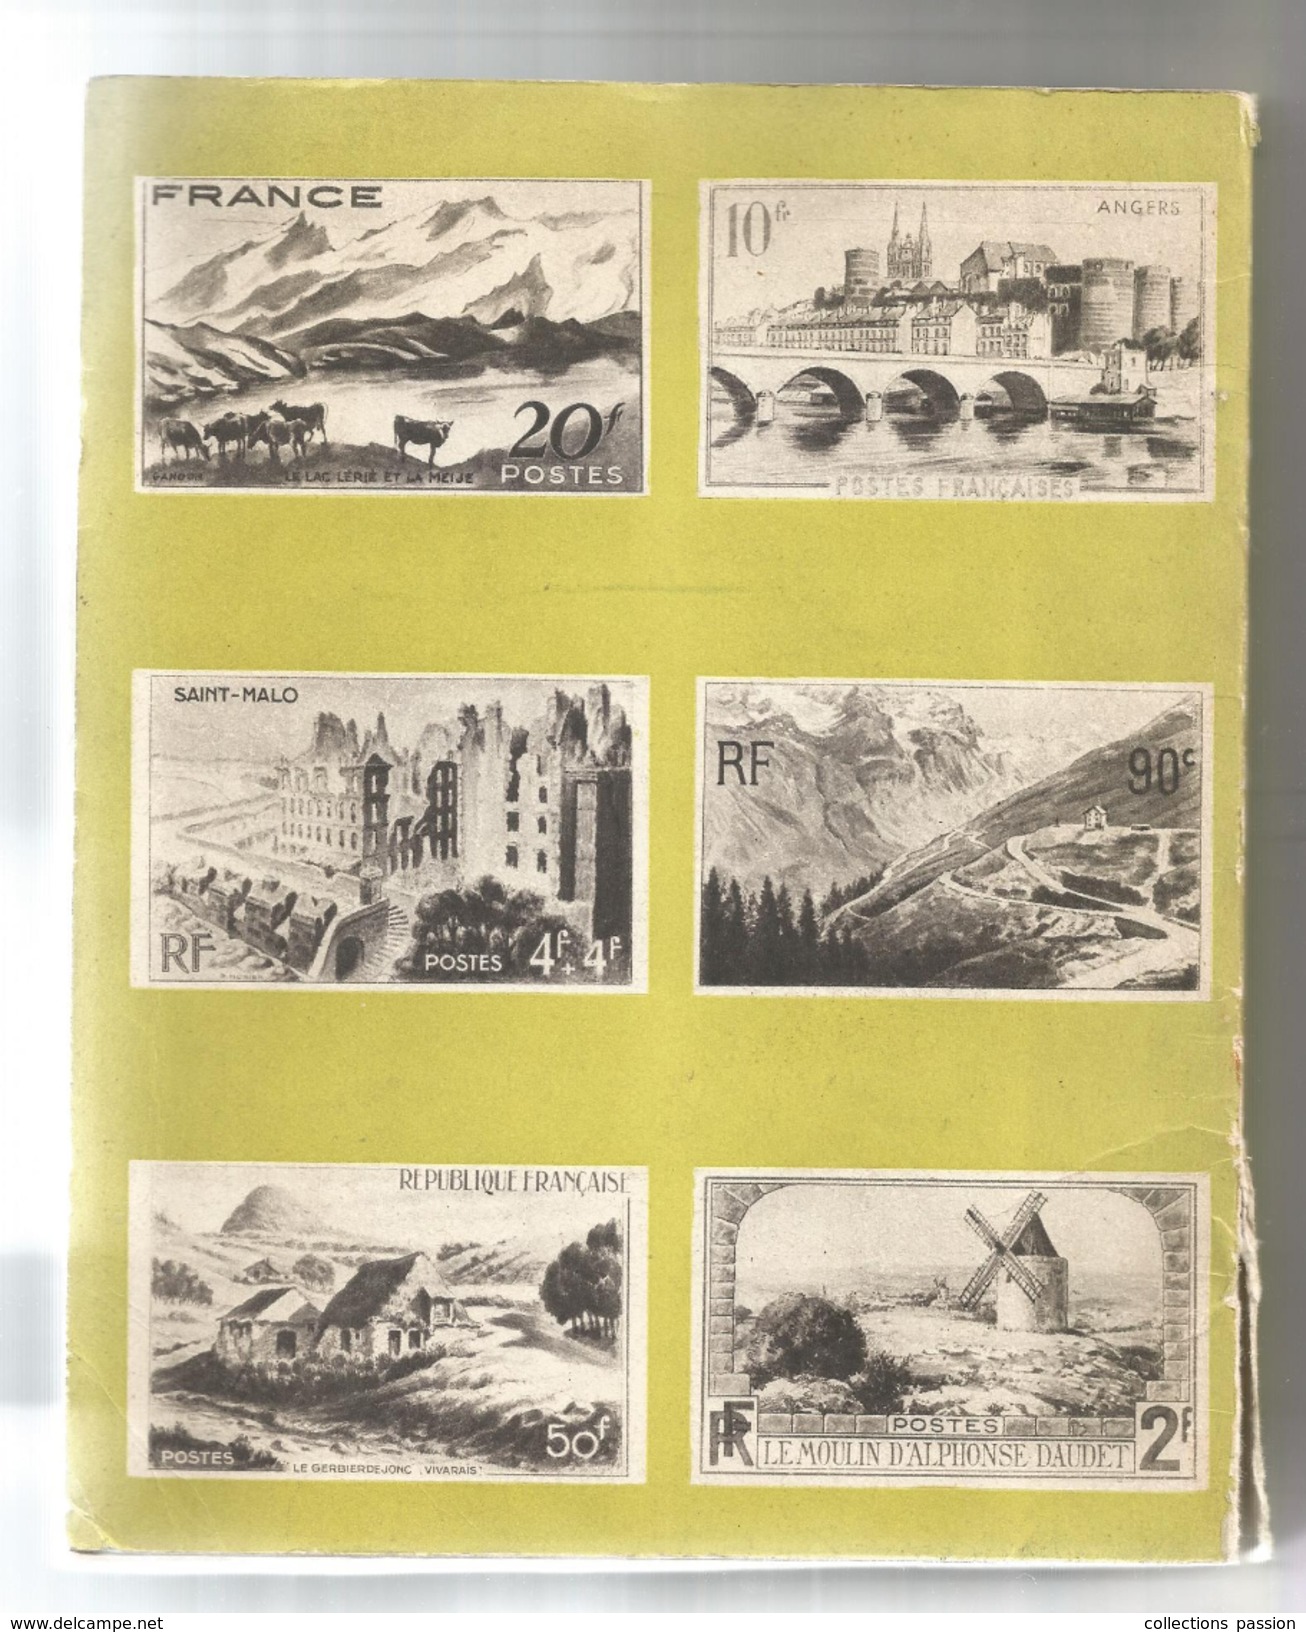 Sites de France , régionalisme, Jules MIHURA , 128 pages, 1950, 7 scans,  frais fr : 4.95 &euro;